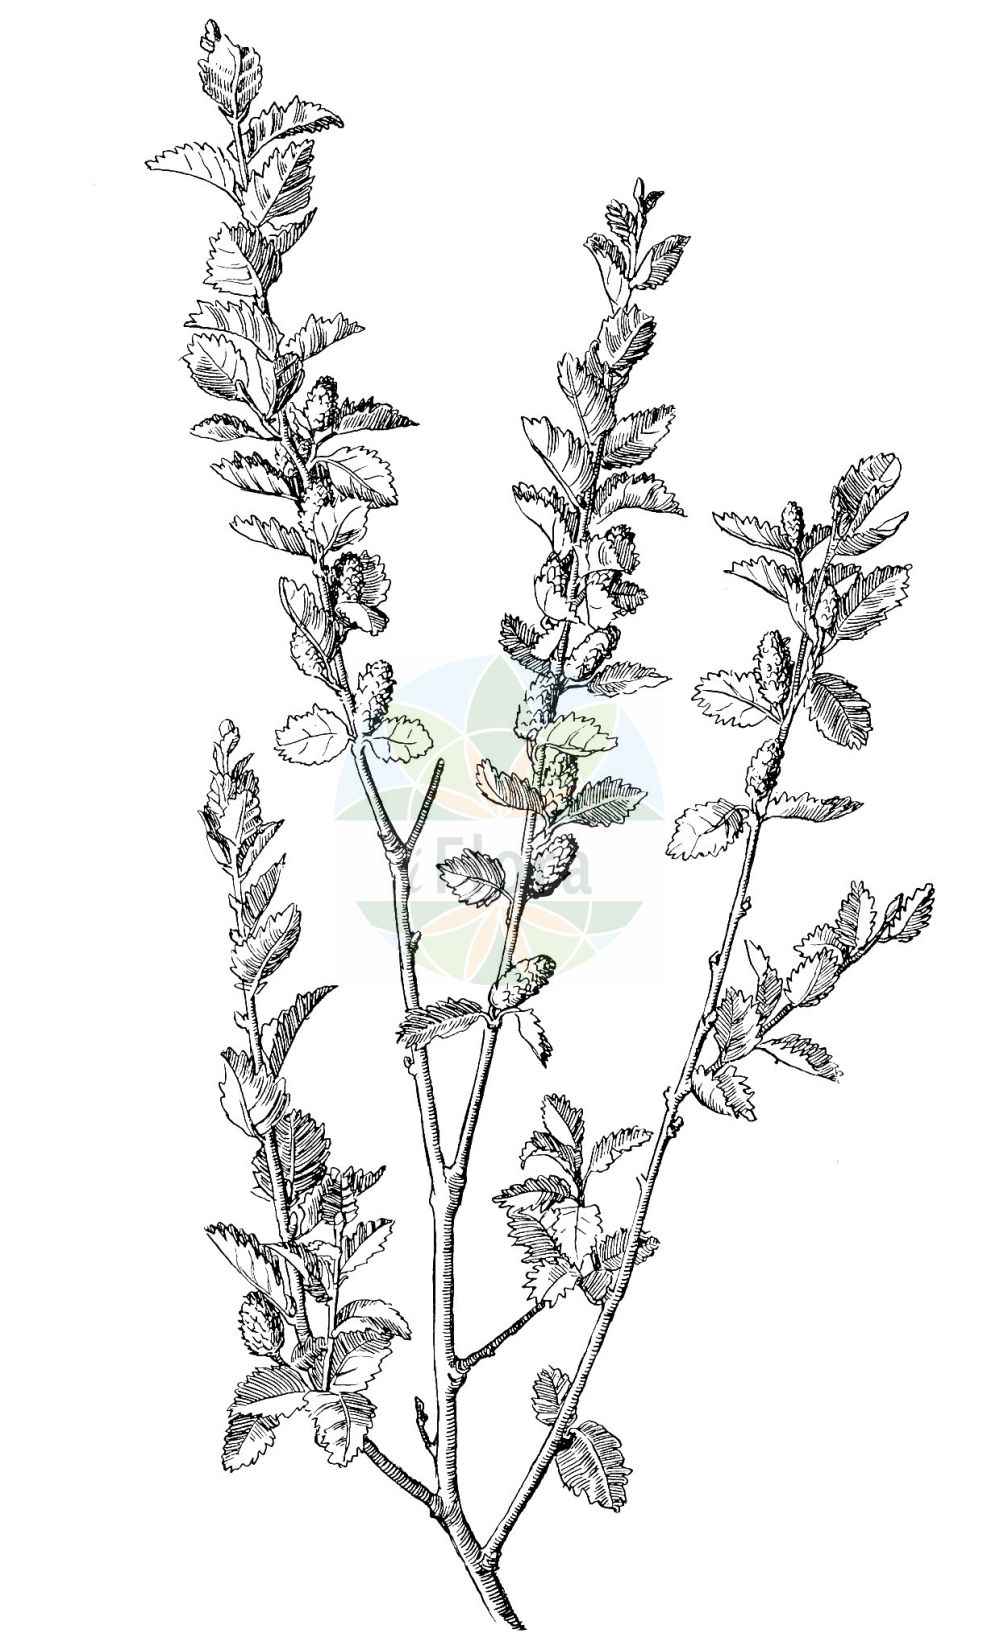 Historische Abbildung von Betula humilis (Strauch-Birke - Lesser Birch). Das Bild zeigt Blatt, Bluete, Frucht und Same. ---- Historical Drawing of Betula humilis (Strauch-Birke - Lesser Birch). The image is showing leaf, flower, fruit and seed.(Betula humilis,Strauch-Birke,Lesser Birch,Betula fruticans,Betula humilis,Betula kamtschatica,Betula myrsinoides,Betula oycowiensis,Betula palustris,Betula sibirica,Betula socolowii,Chamaebetula humilis,Strauch-Birke,Niedrige Birke,Lesser Birch,Shrubby Birch,Betula,Birke,Birch,Betulaceae,Birkengewächse,Birch family,Blatt,Bluete,Frucht,Same,leaf,flower,fruit,seed,Oltmanns (1927))